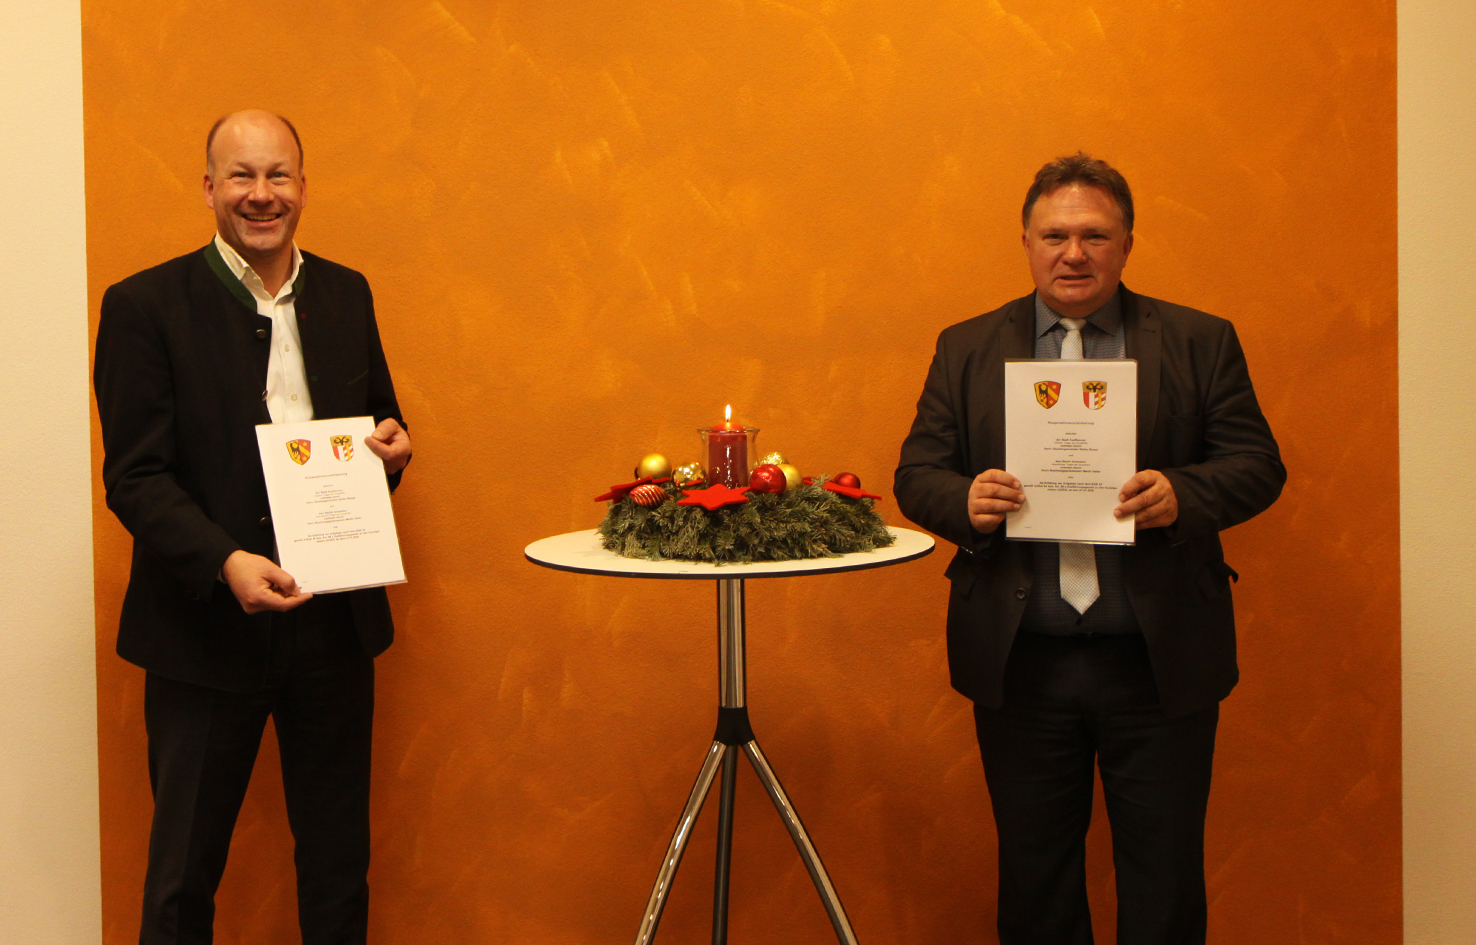 Bezirkstagspräsident Martin Sailer (links) und Stefan Bosse, Oberbürgermeister der Stadt Kaufbeuren, unterzeichneten die Kooperationsvereinbarung im Rahmen der Bezirkstagssitzung.